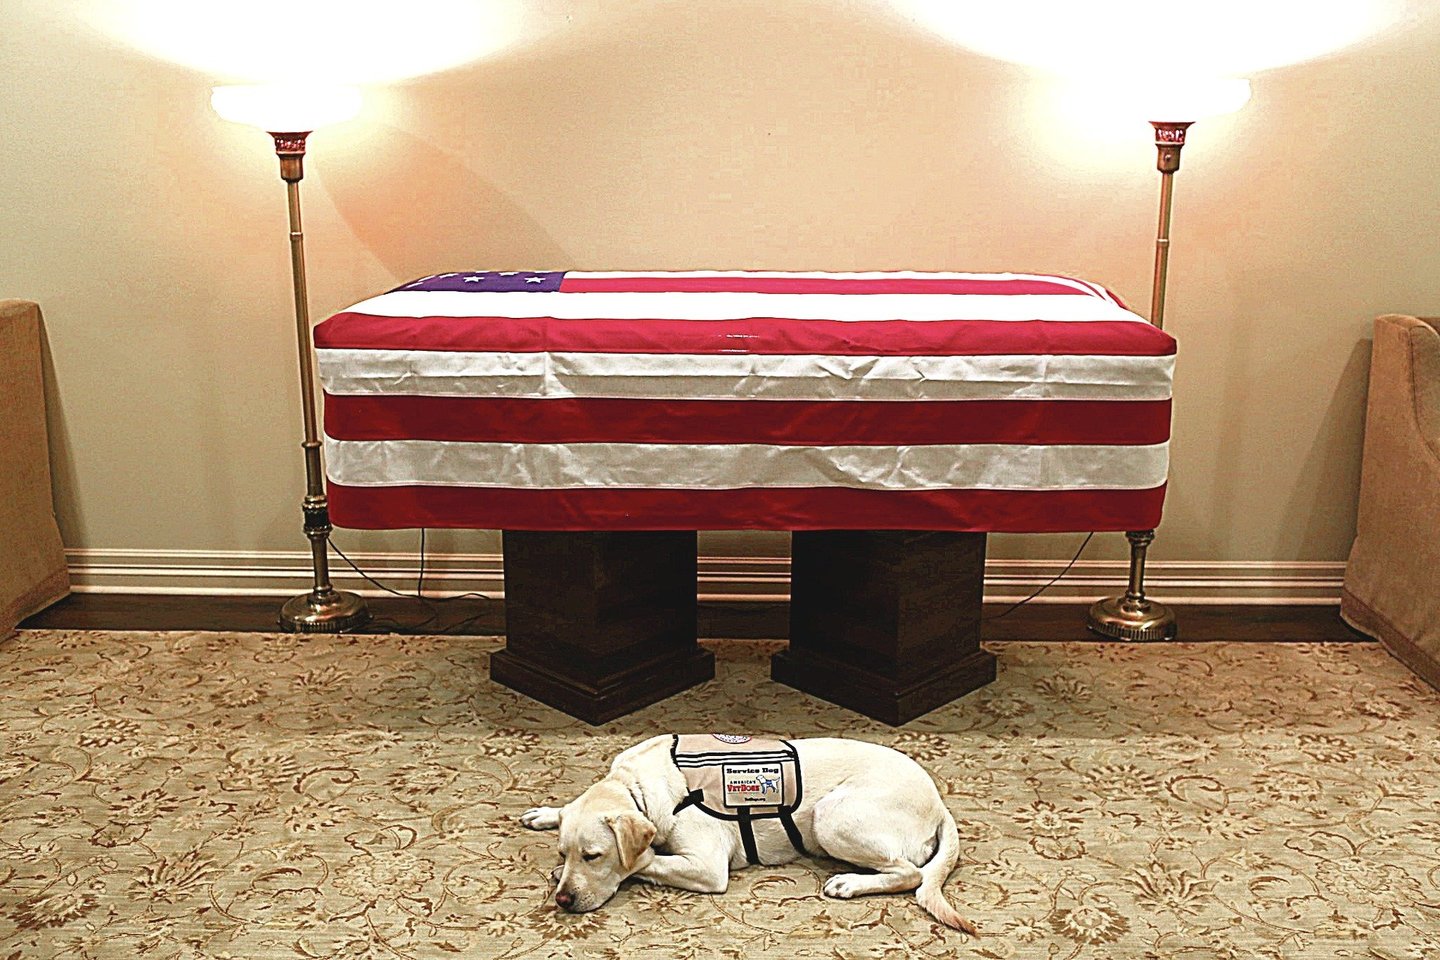 G.H.W.Busho tarnybinis šuo Sully budėjo prie jo karsto ir vyks į laidotuvių ceremoniją.